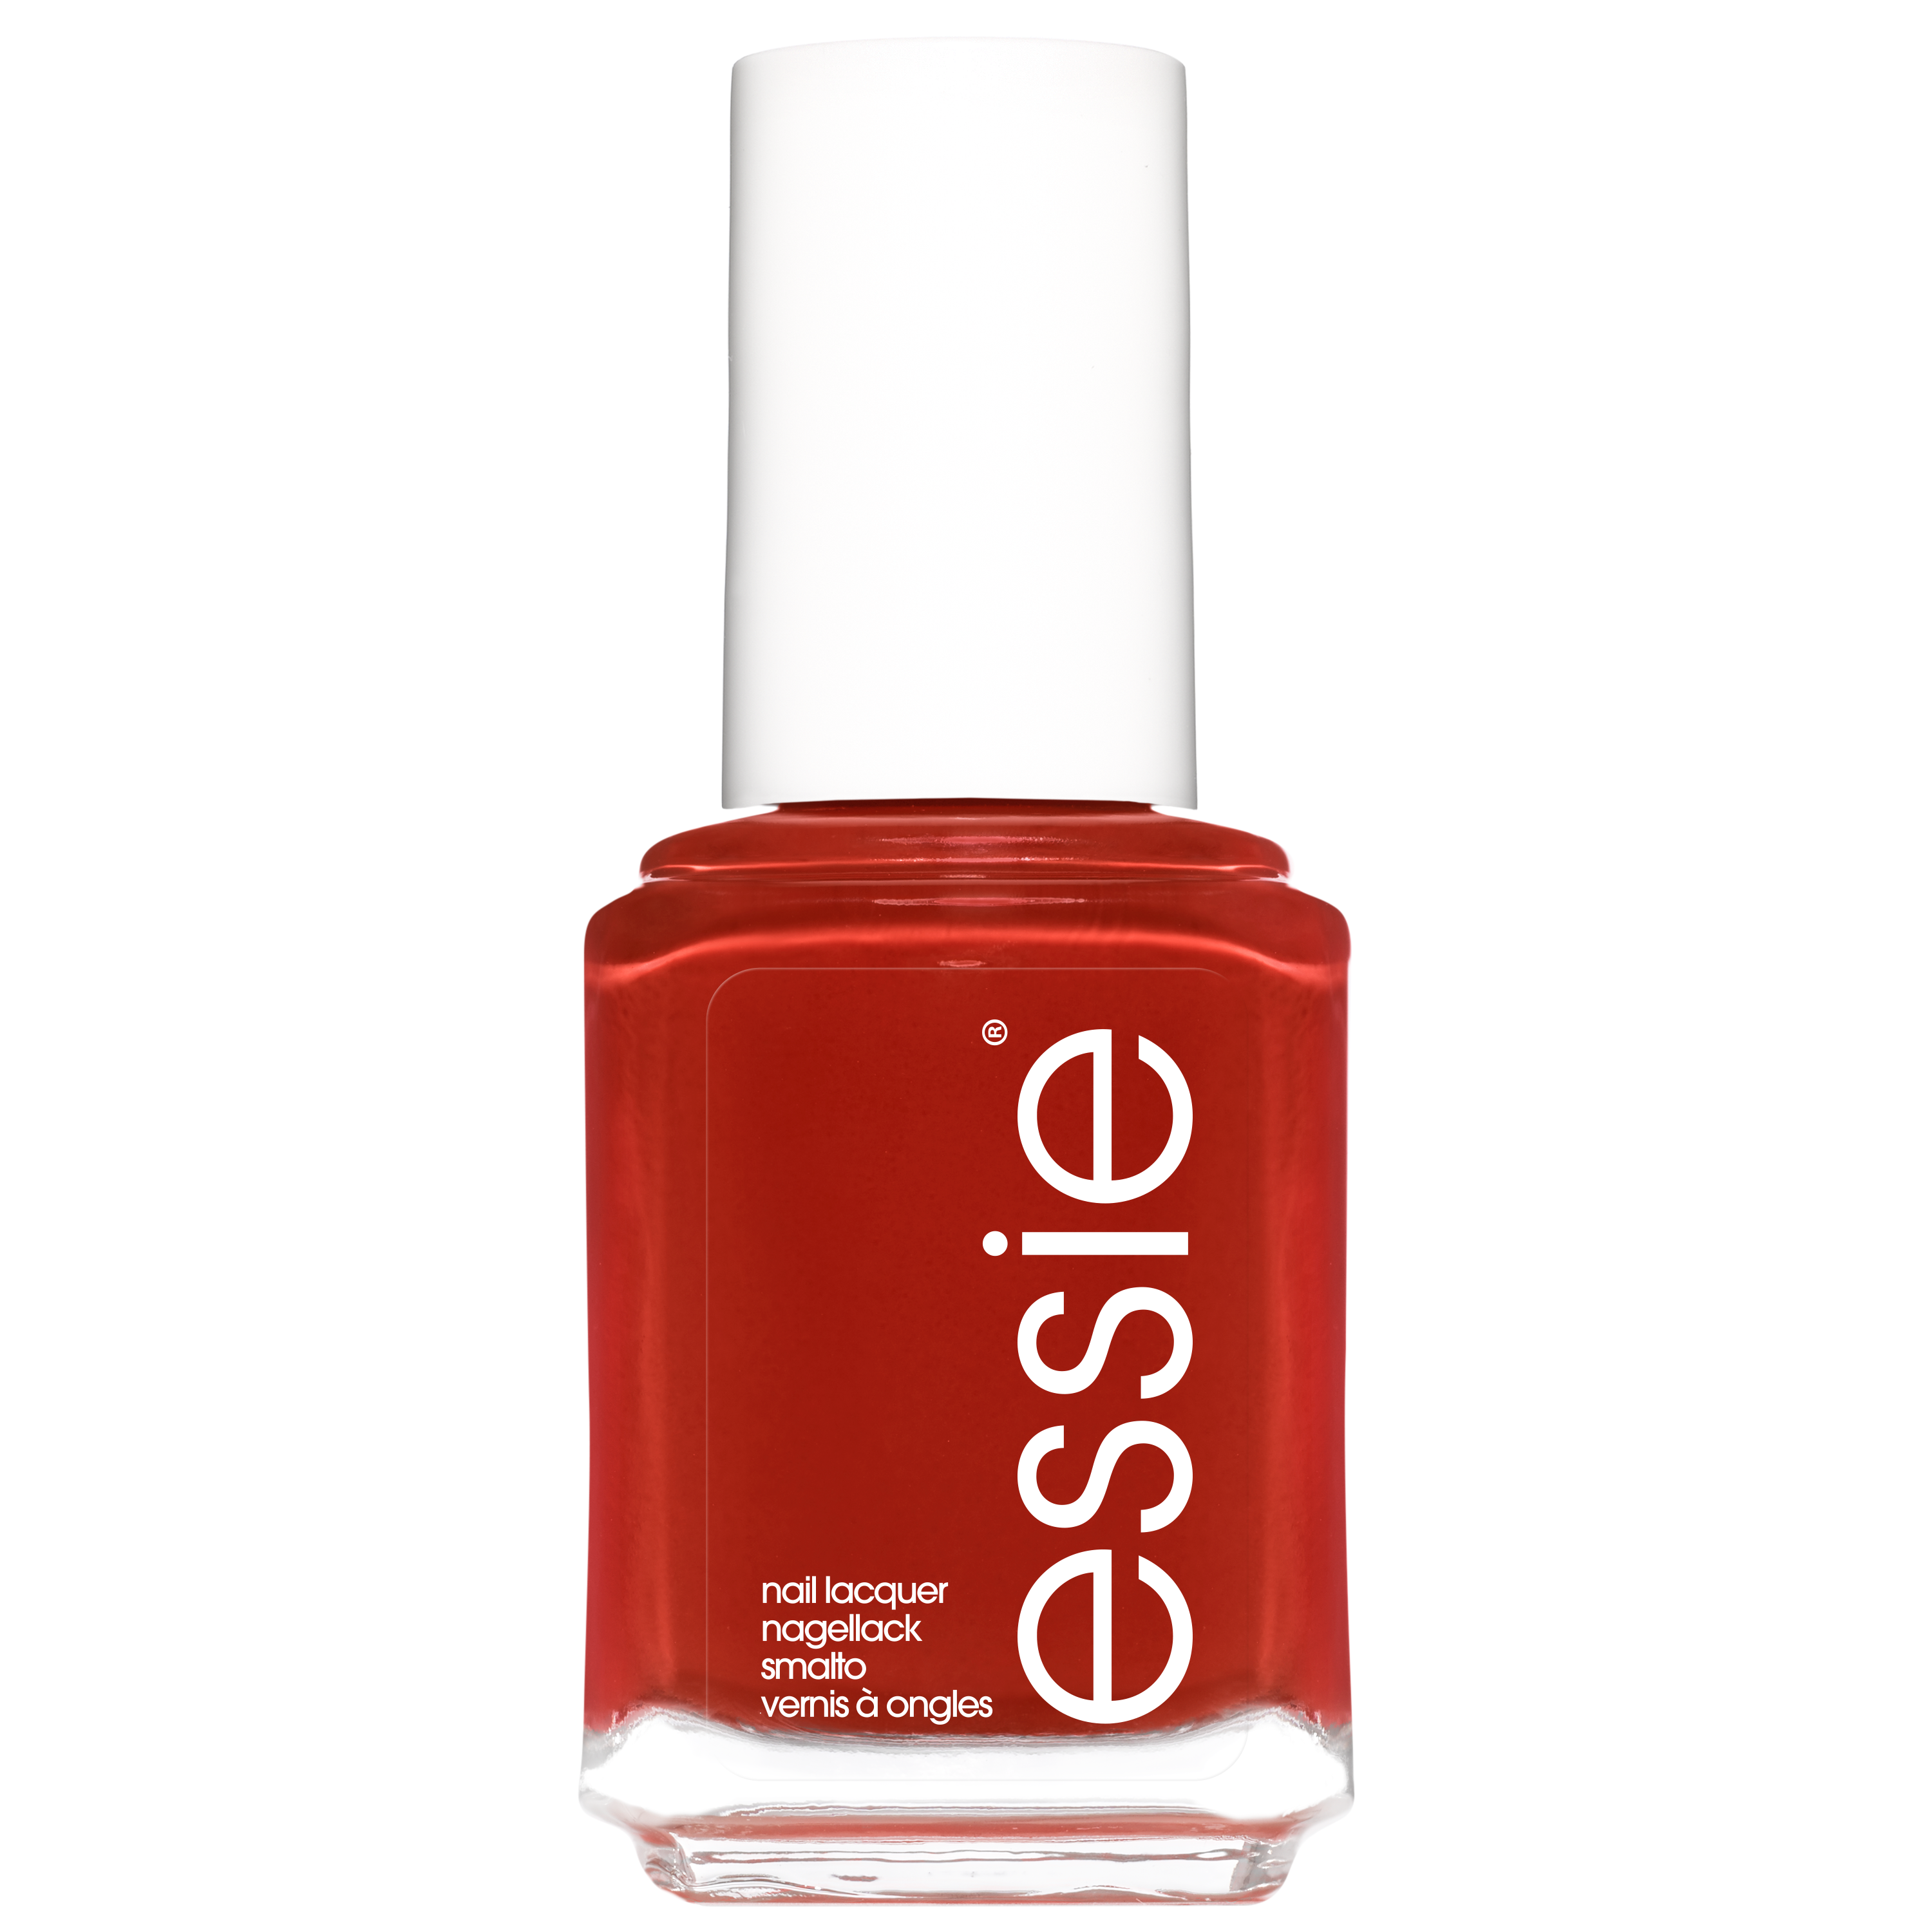 Essie summer 2020 limited edition - 704 spice it up - rood - glanzende nagellak - 13,5 ml